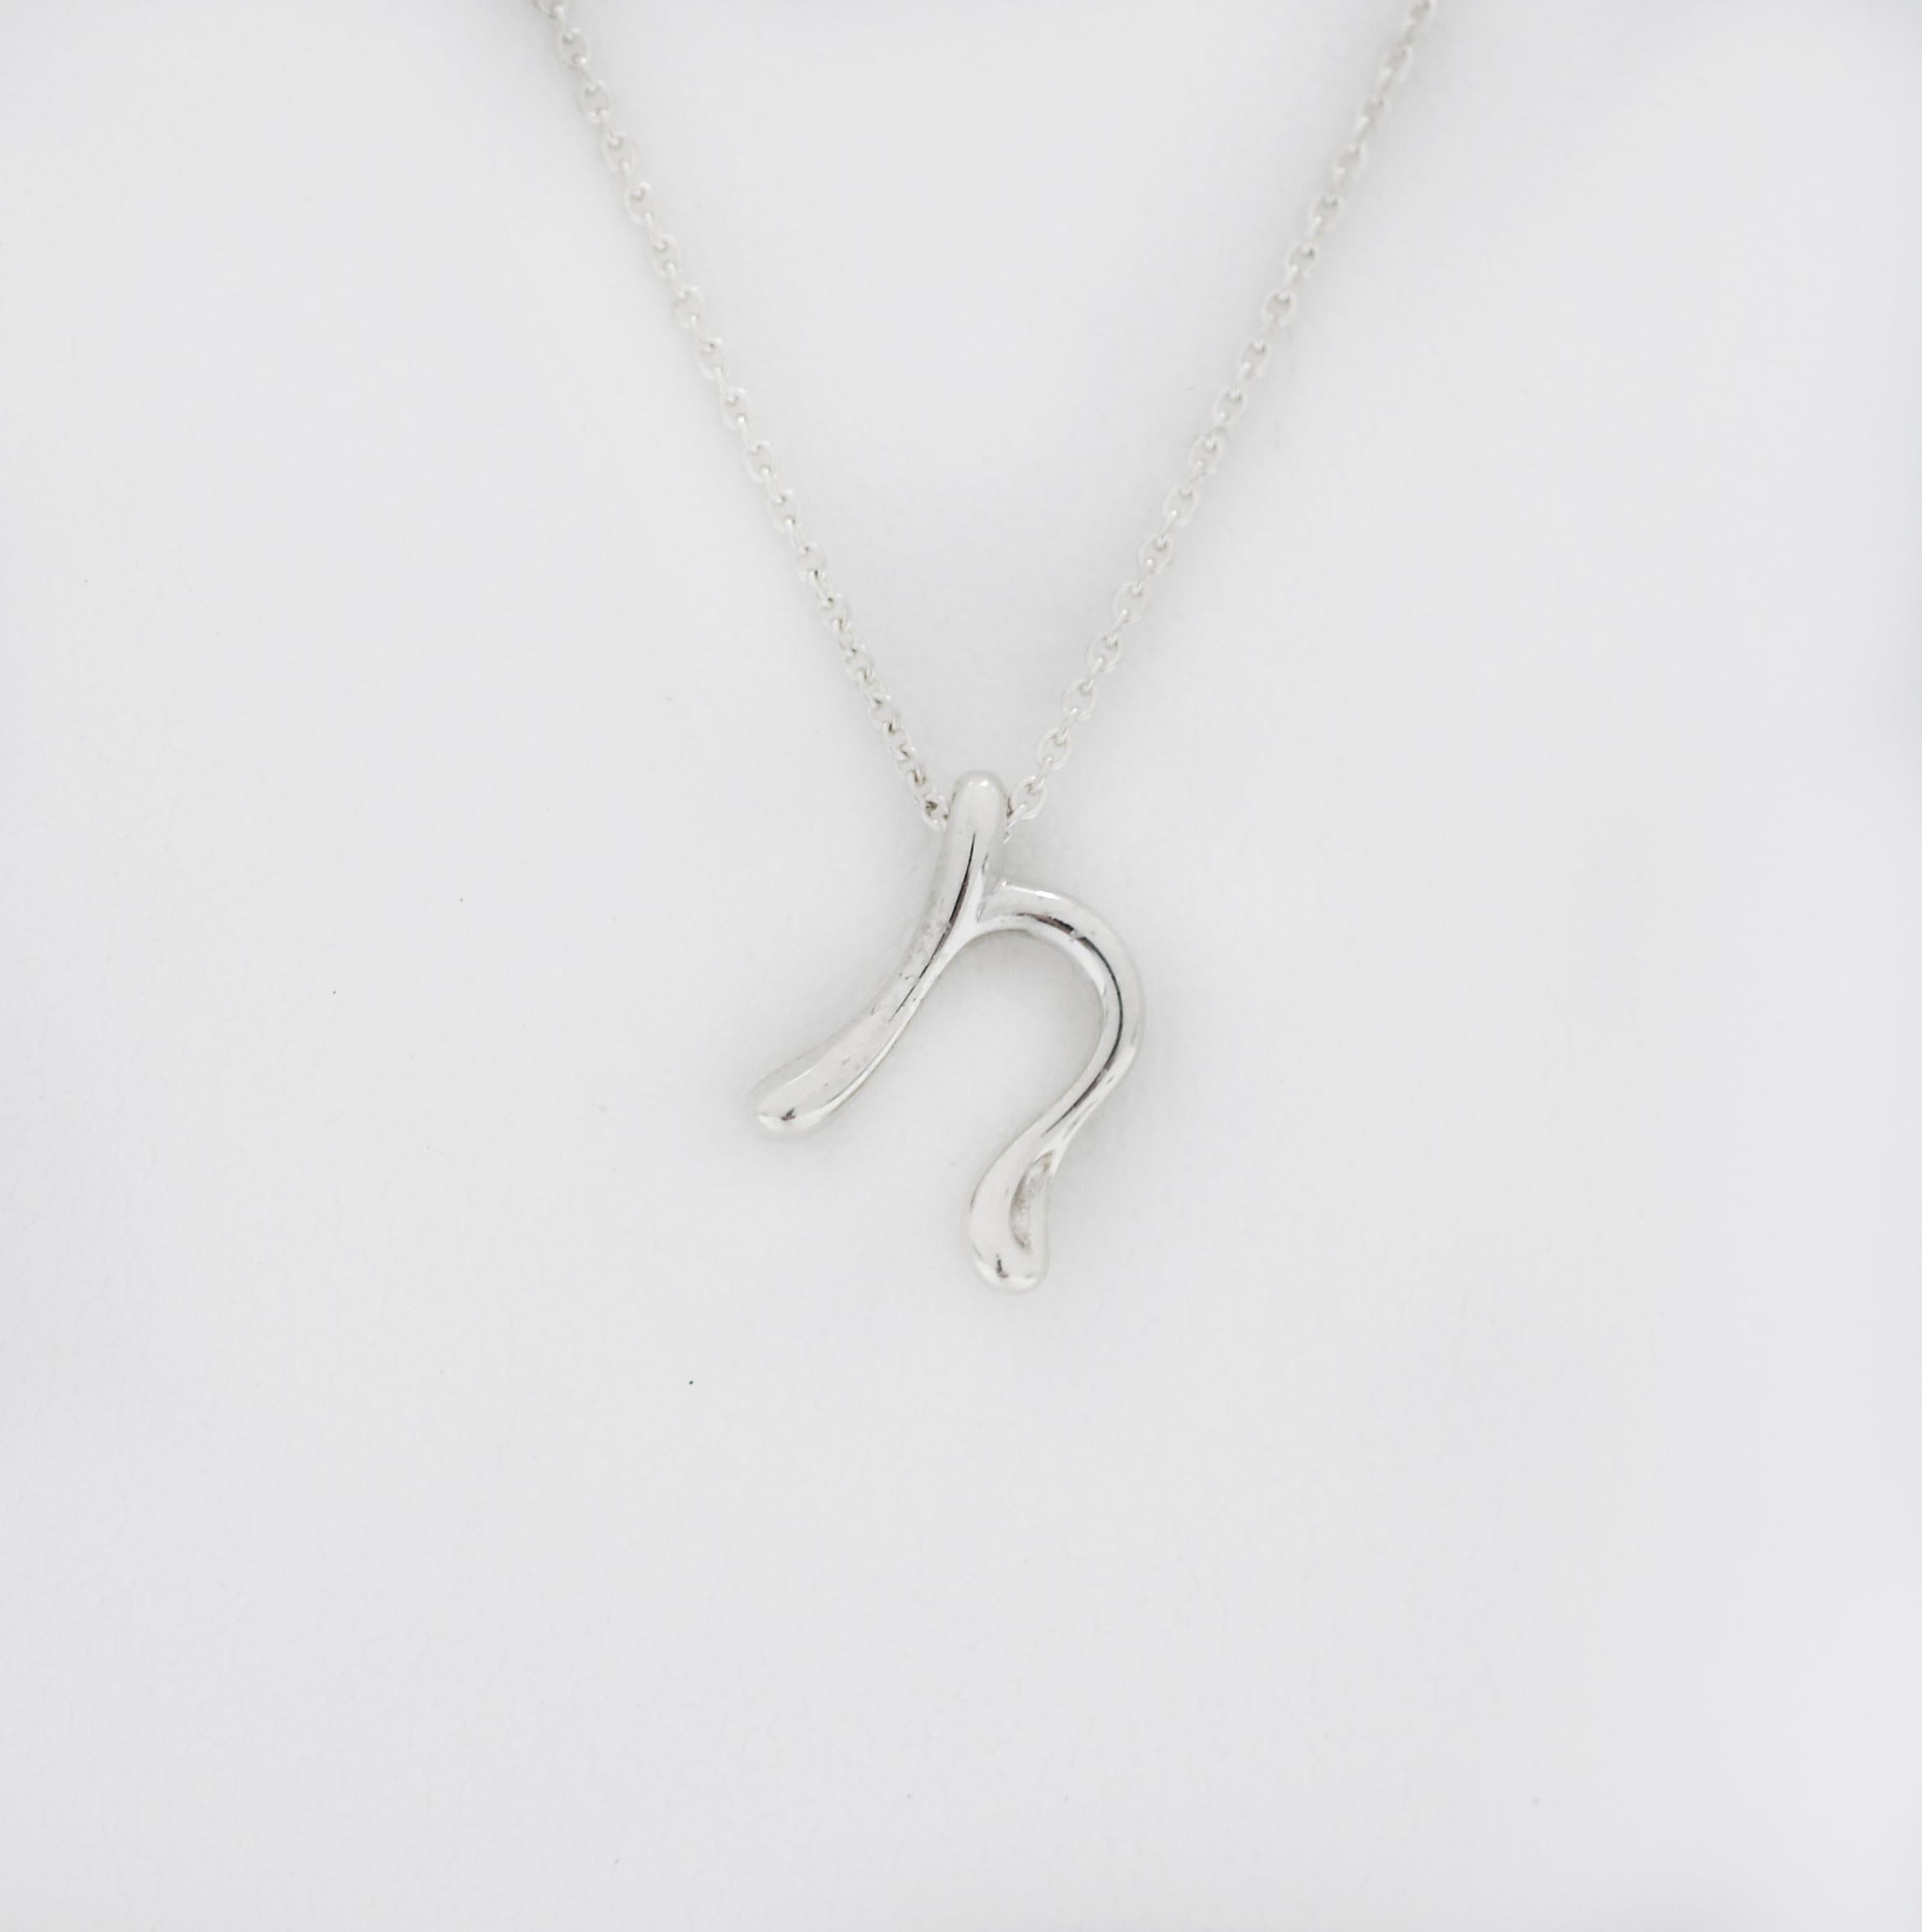 Tiffany & Co
Silver 925
Elsa Peretti
N letter Pendant
Chain 16